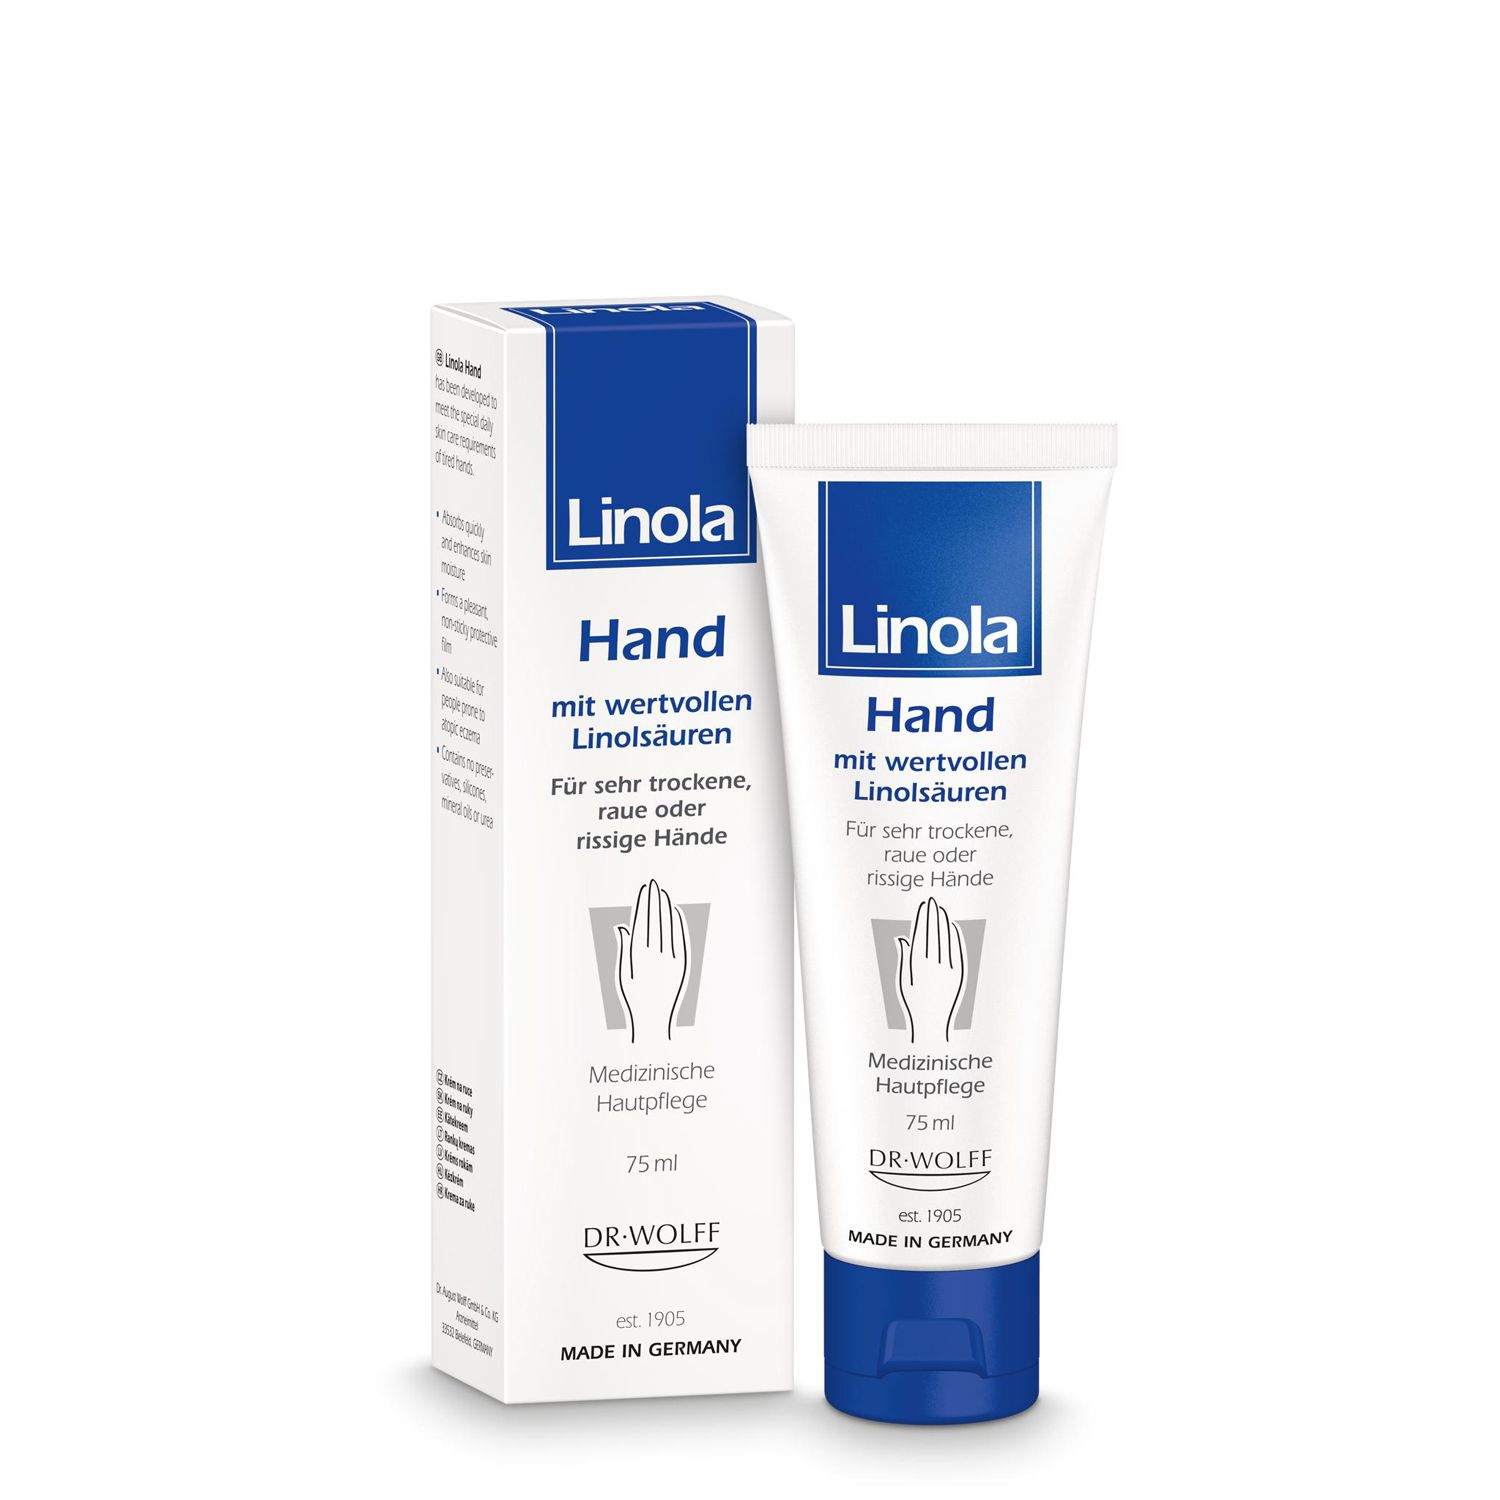 Linola Hand - Handcreme für trockene, raue oder rissige Hände